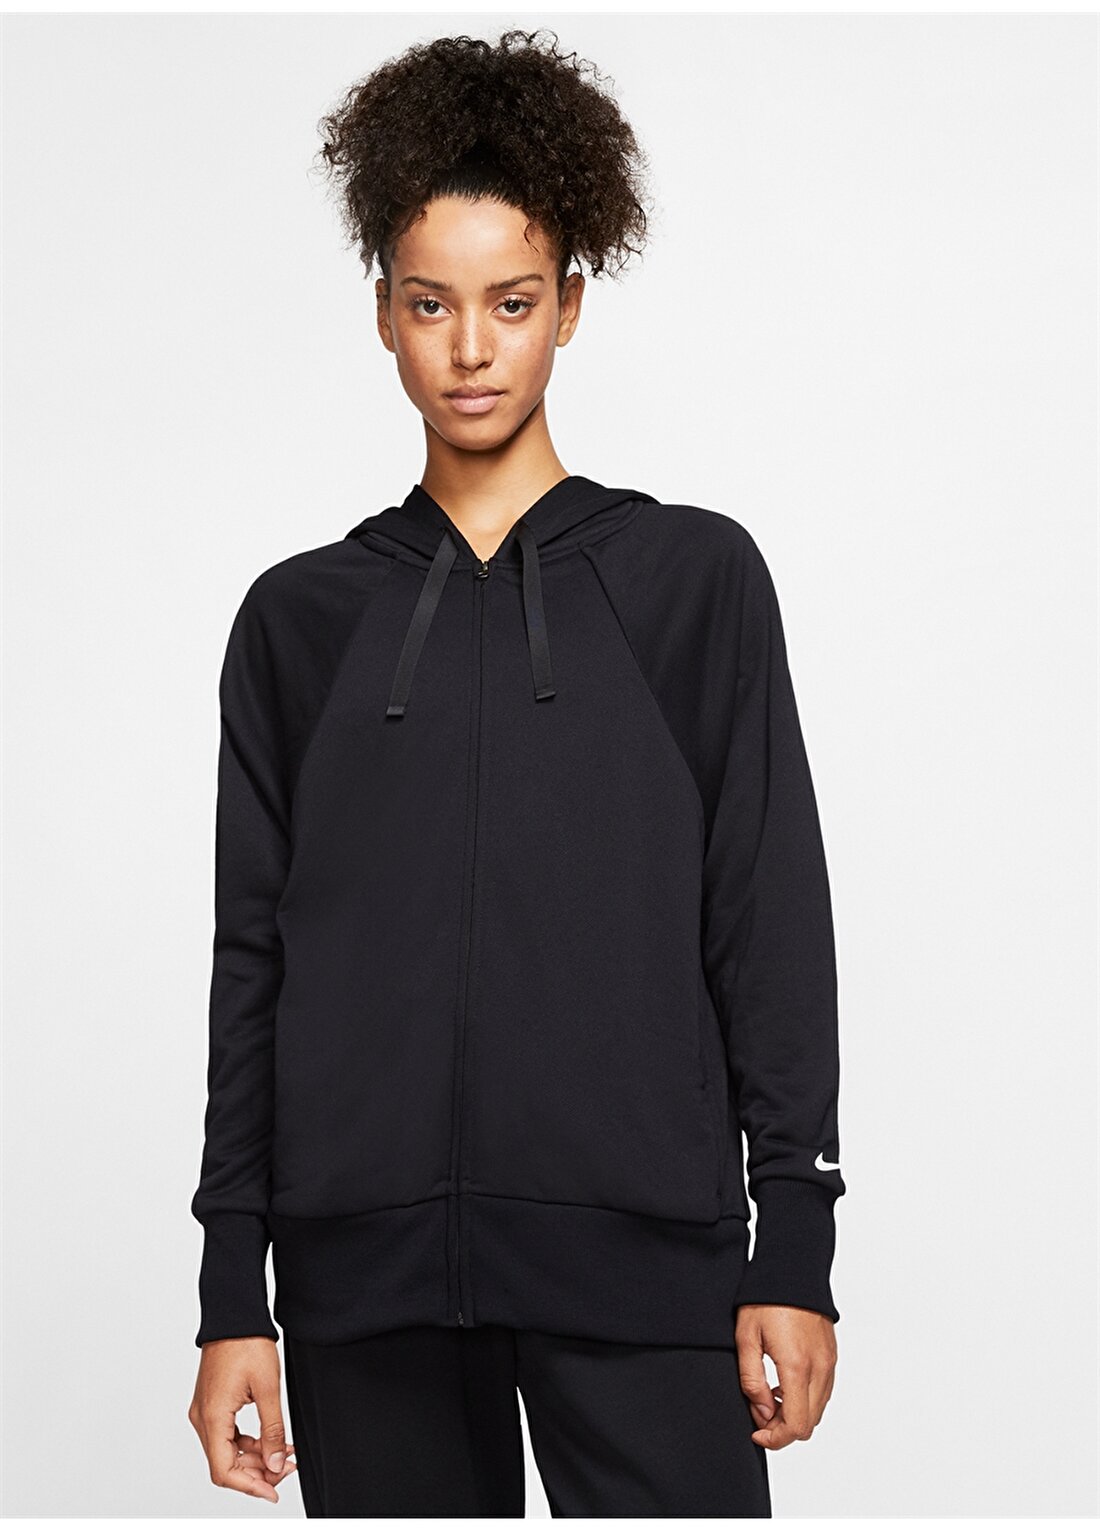 Nike Dri-FIT Get Fit Kadın Zip Ceket